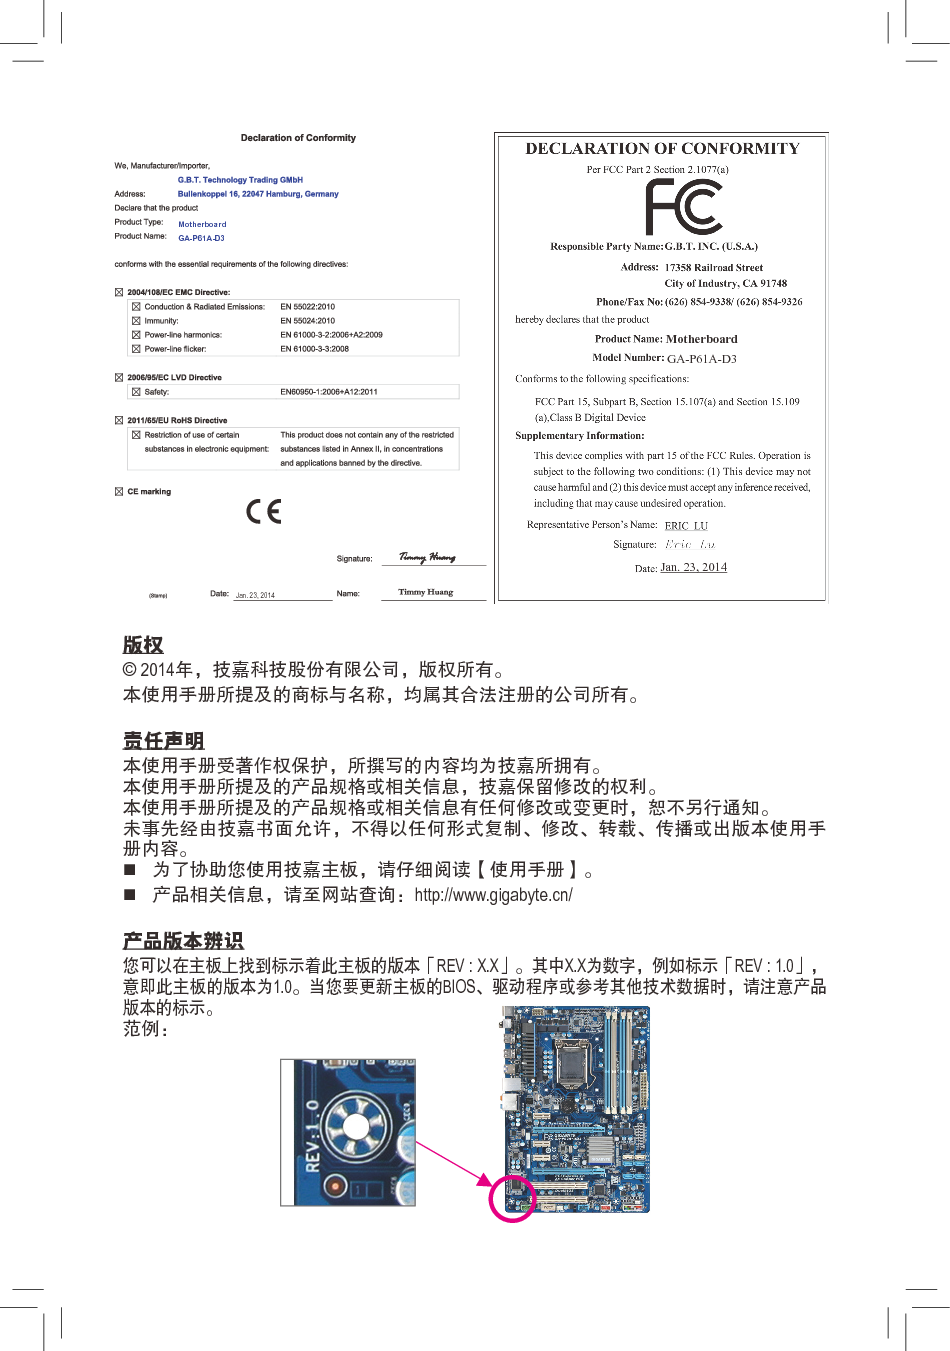 技嘉 Gigabyte GA-P61A-D3 3001版 使用手册 第1页